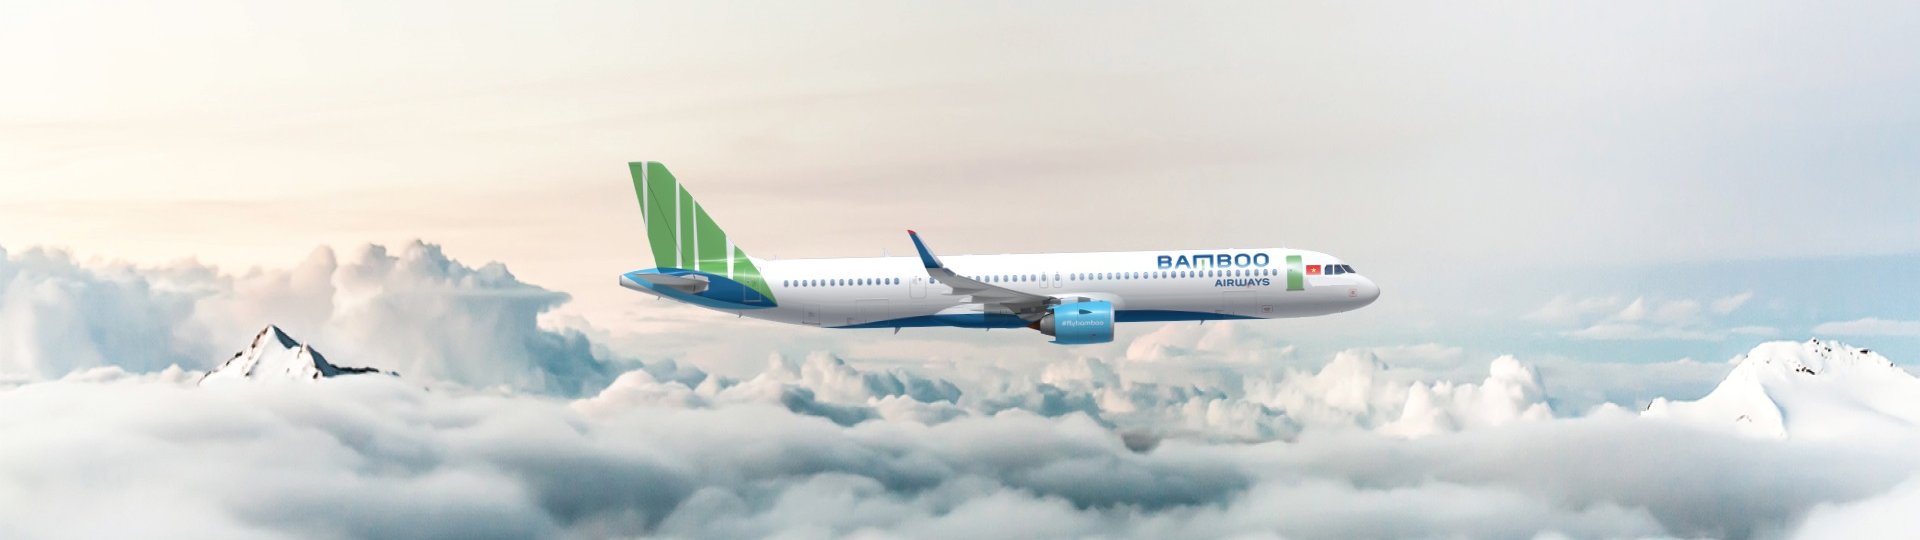 Bamboo Airways triển khai sửa đổi/bổ sung bộ điều kiện giá vé